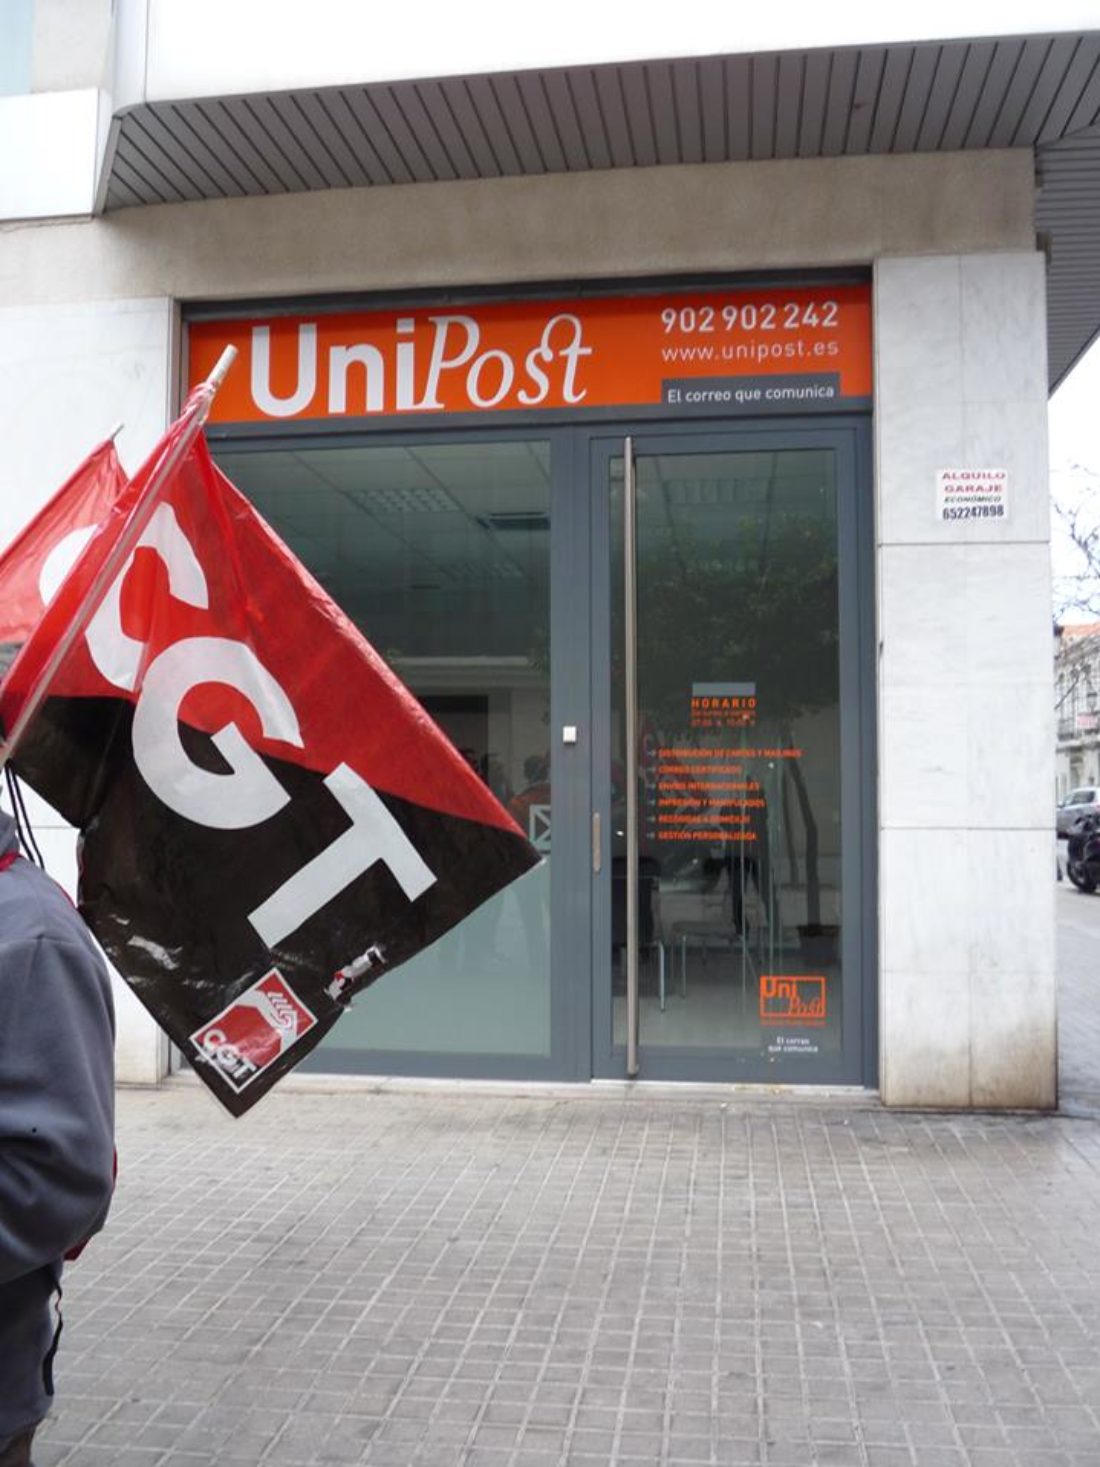 31-m: Manifestación de apoyo a la plantilla de Unipost en A Coruña